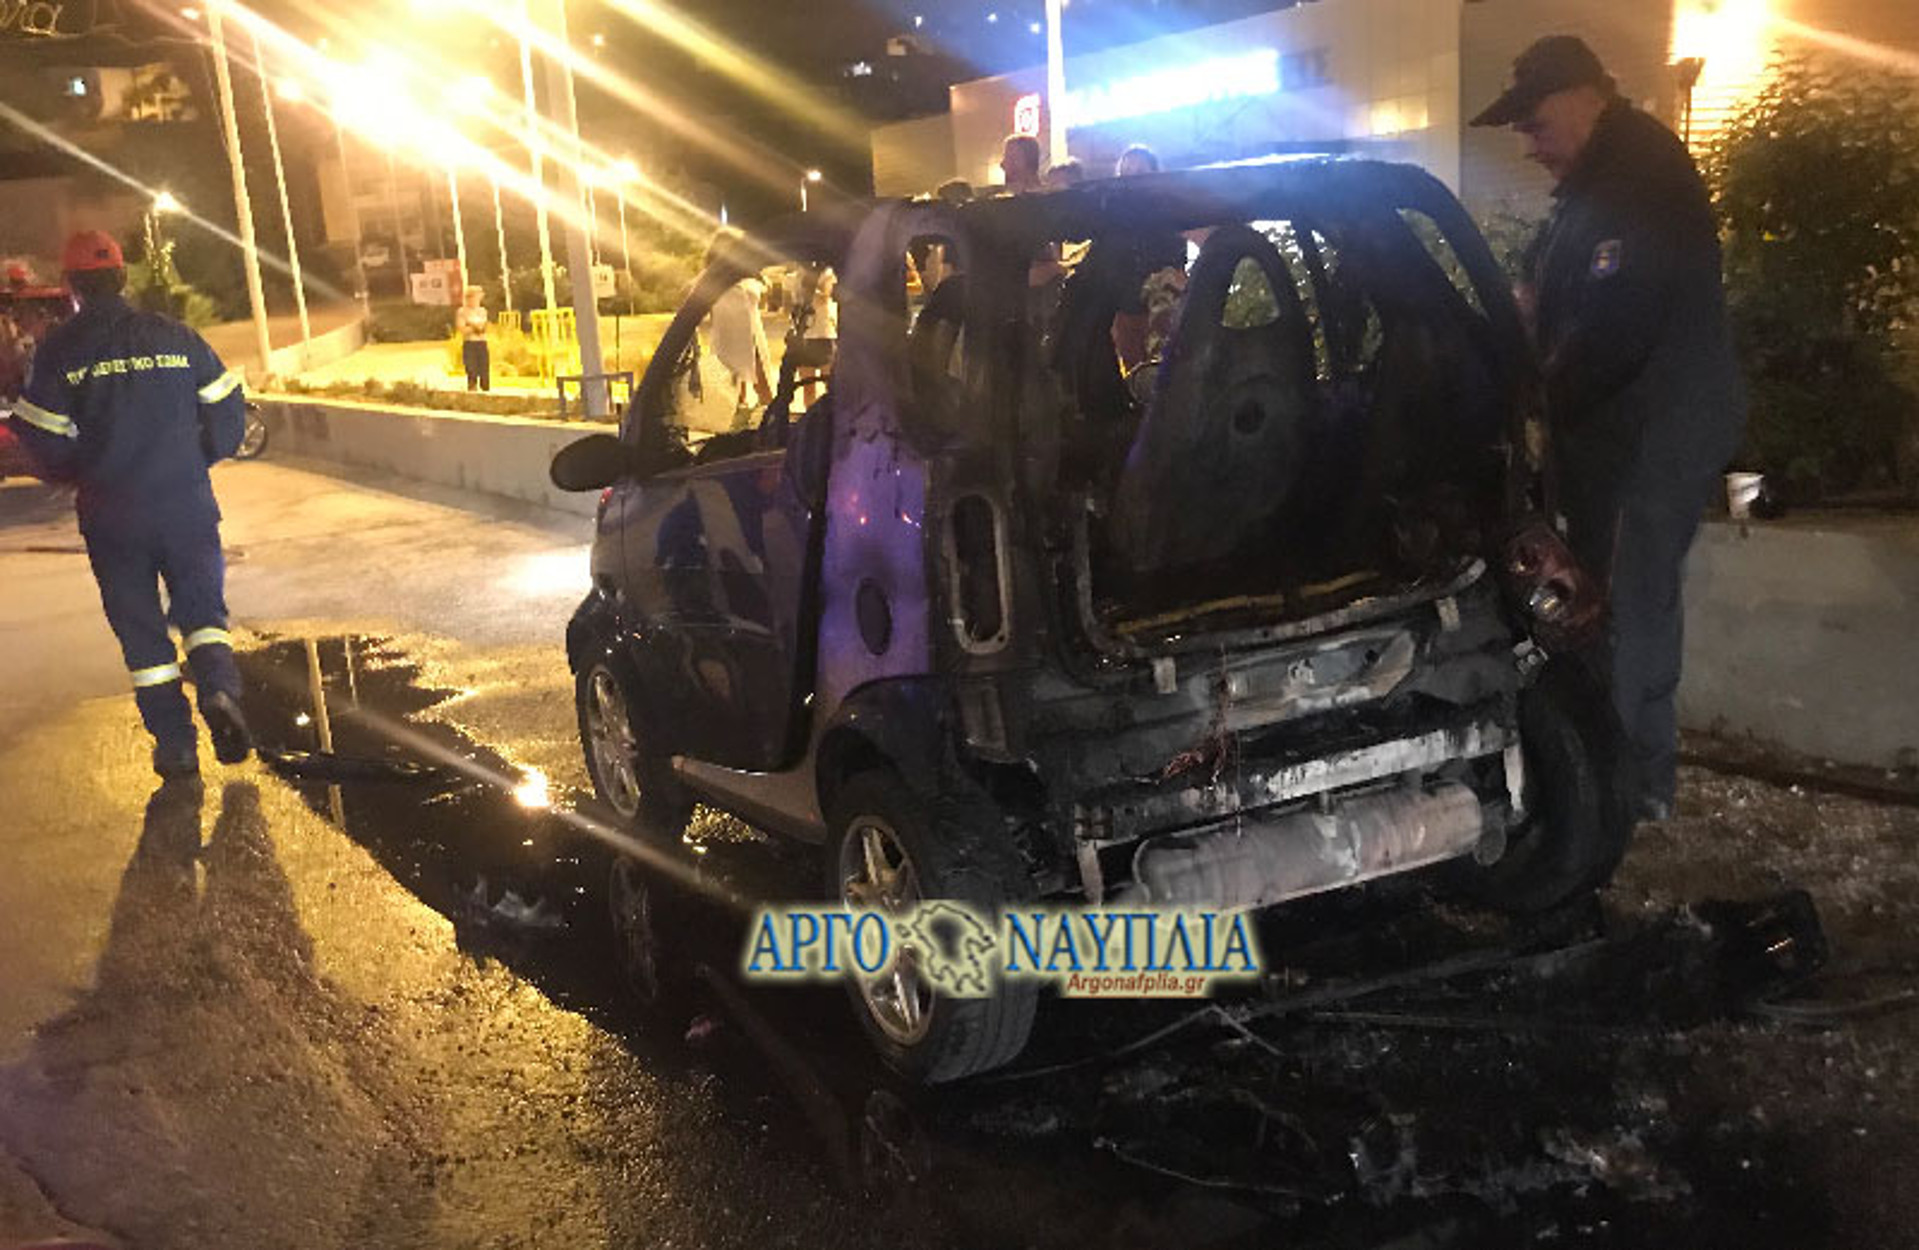 Ναύπλιο: Αυτοκίνητο πήρε φωτιά εν κινήσει! Ολική καταστροφή [pics]